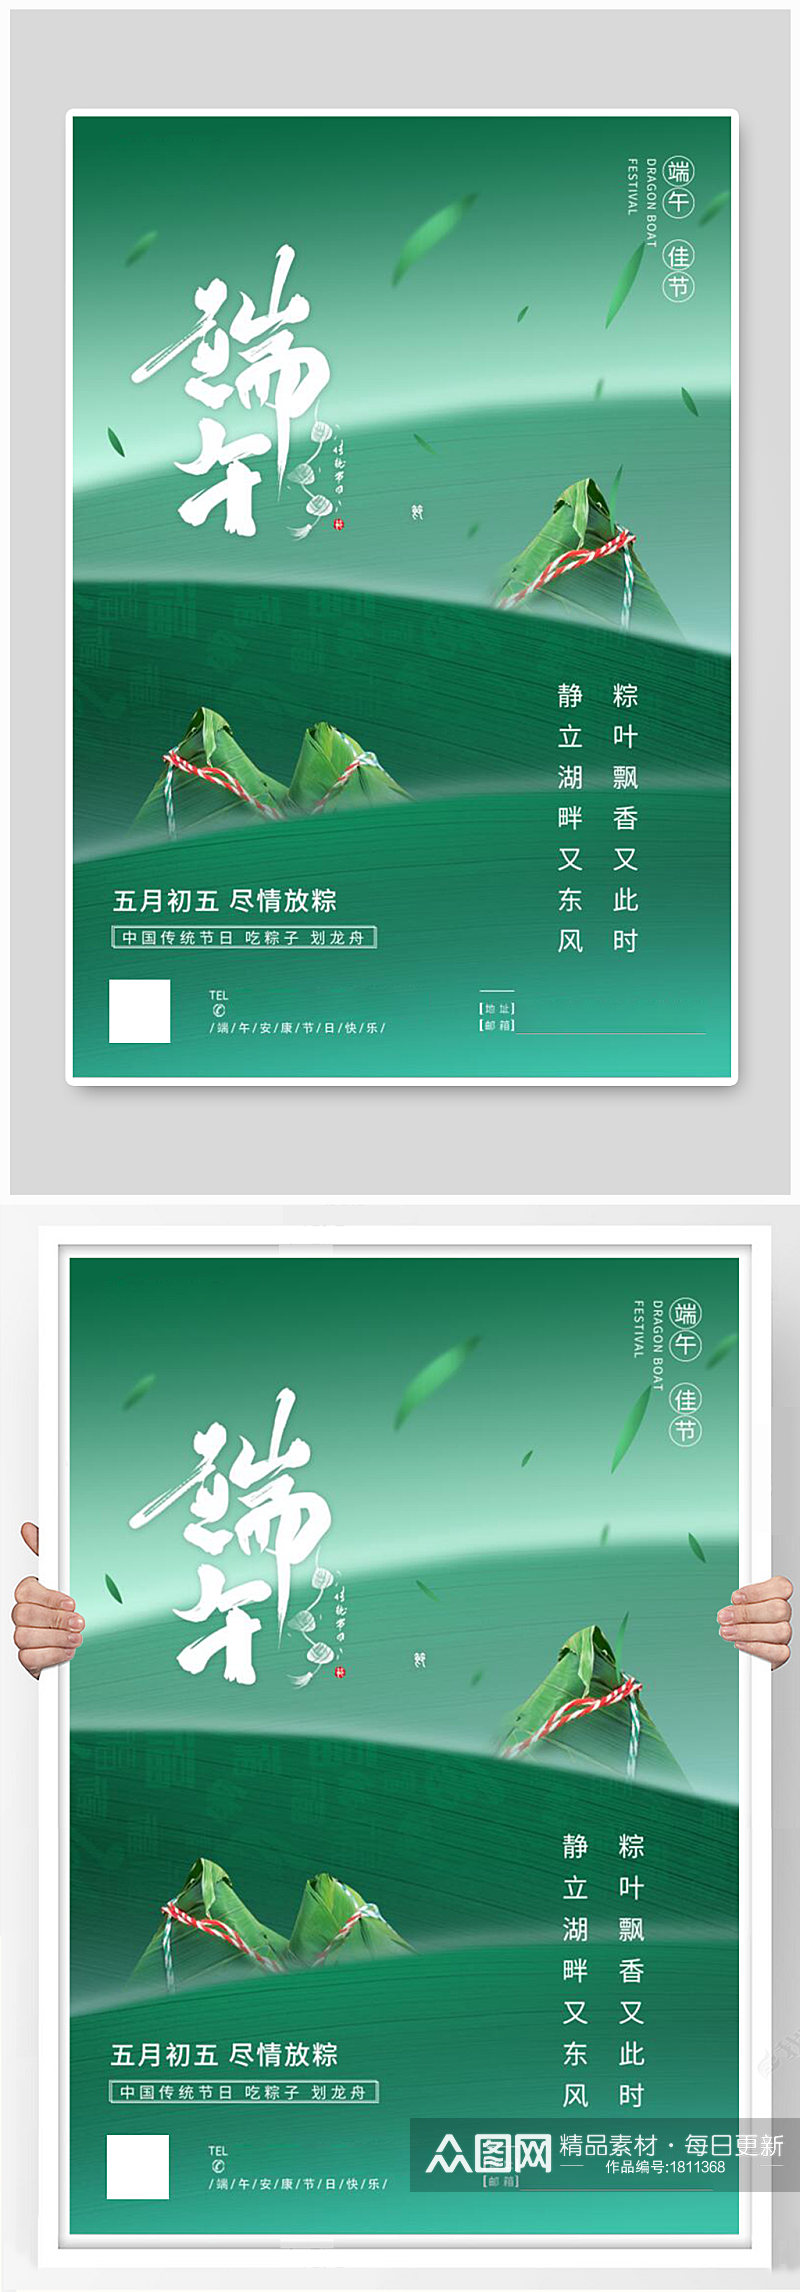 绿色清新端午佳节节日海报素材